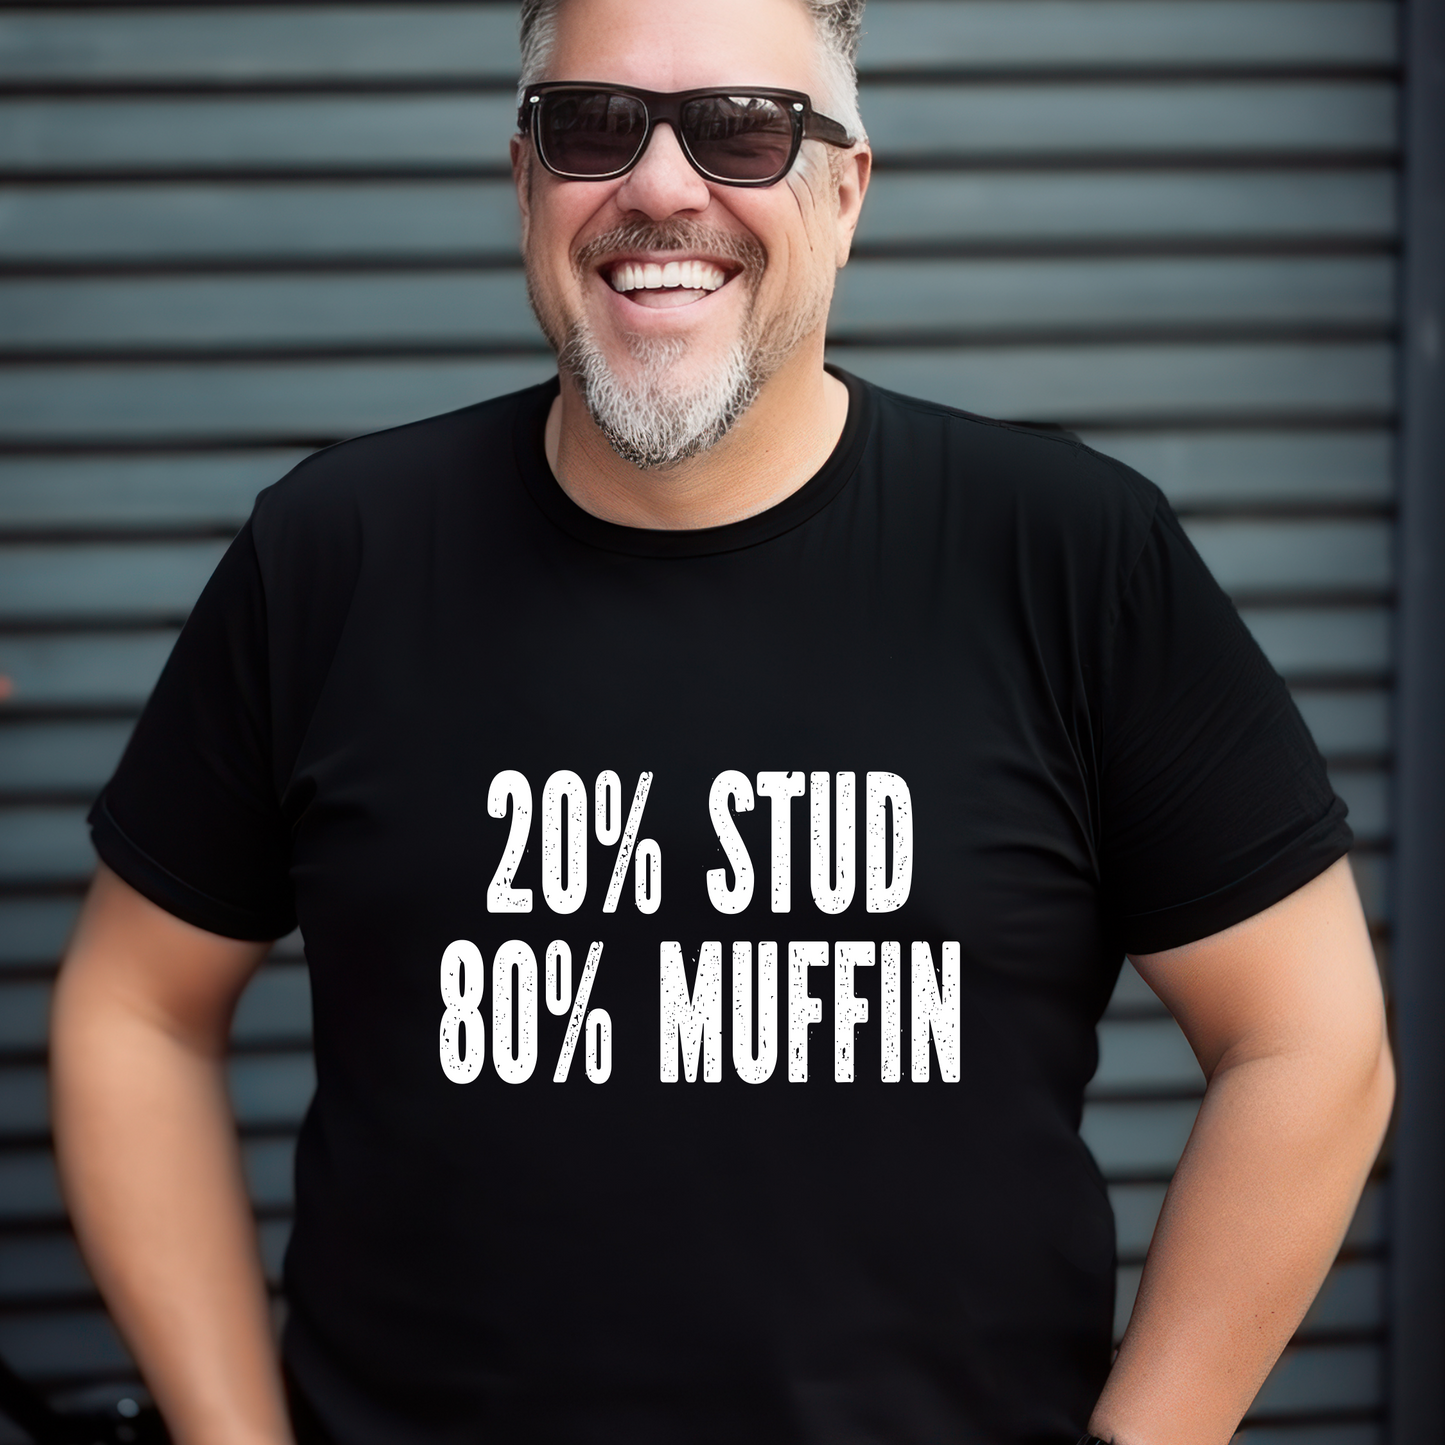 20% Stud, 80% Muffin